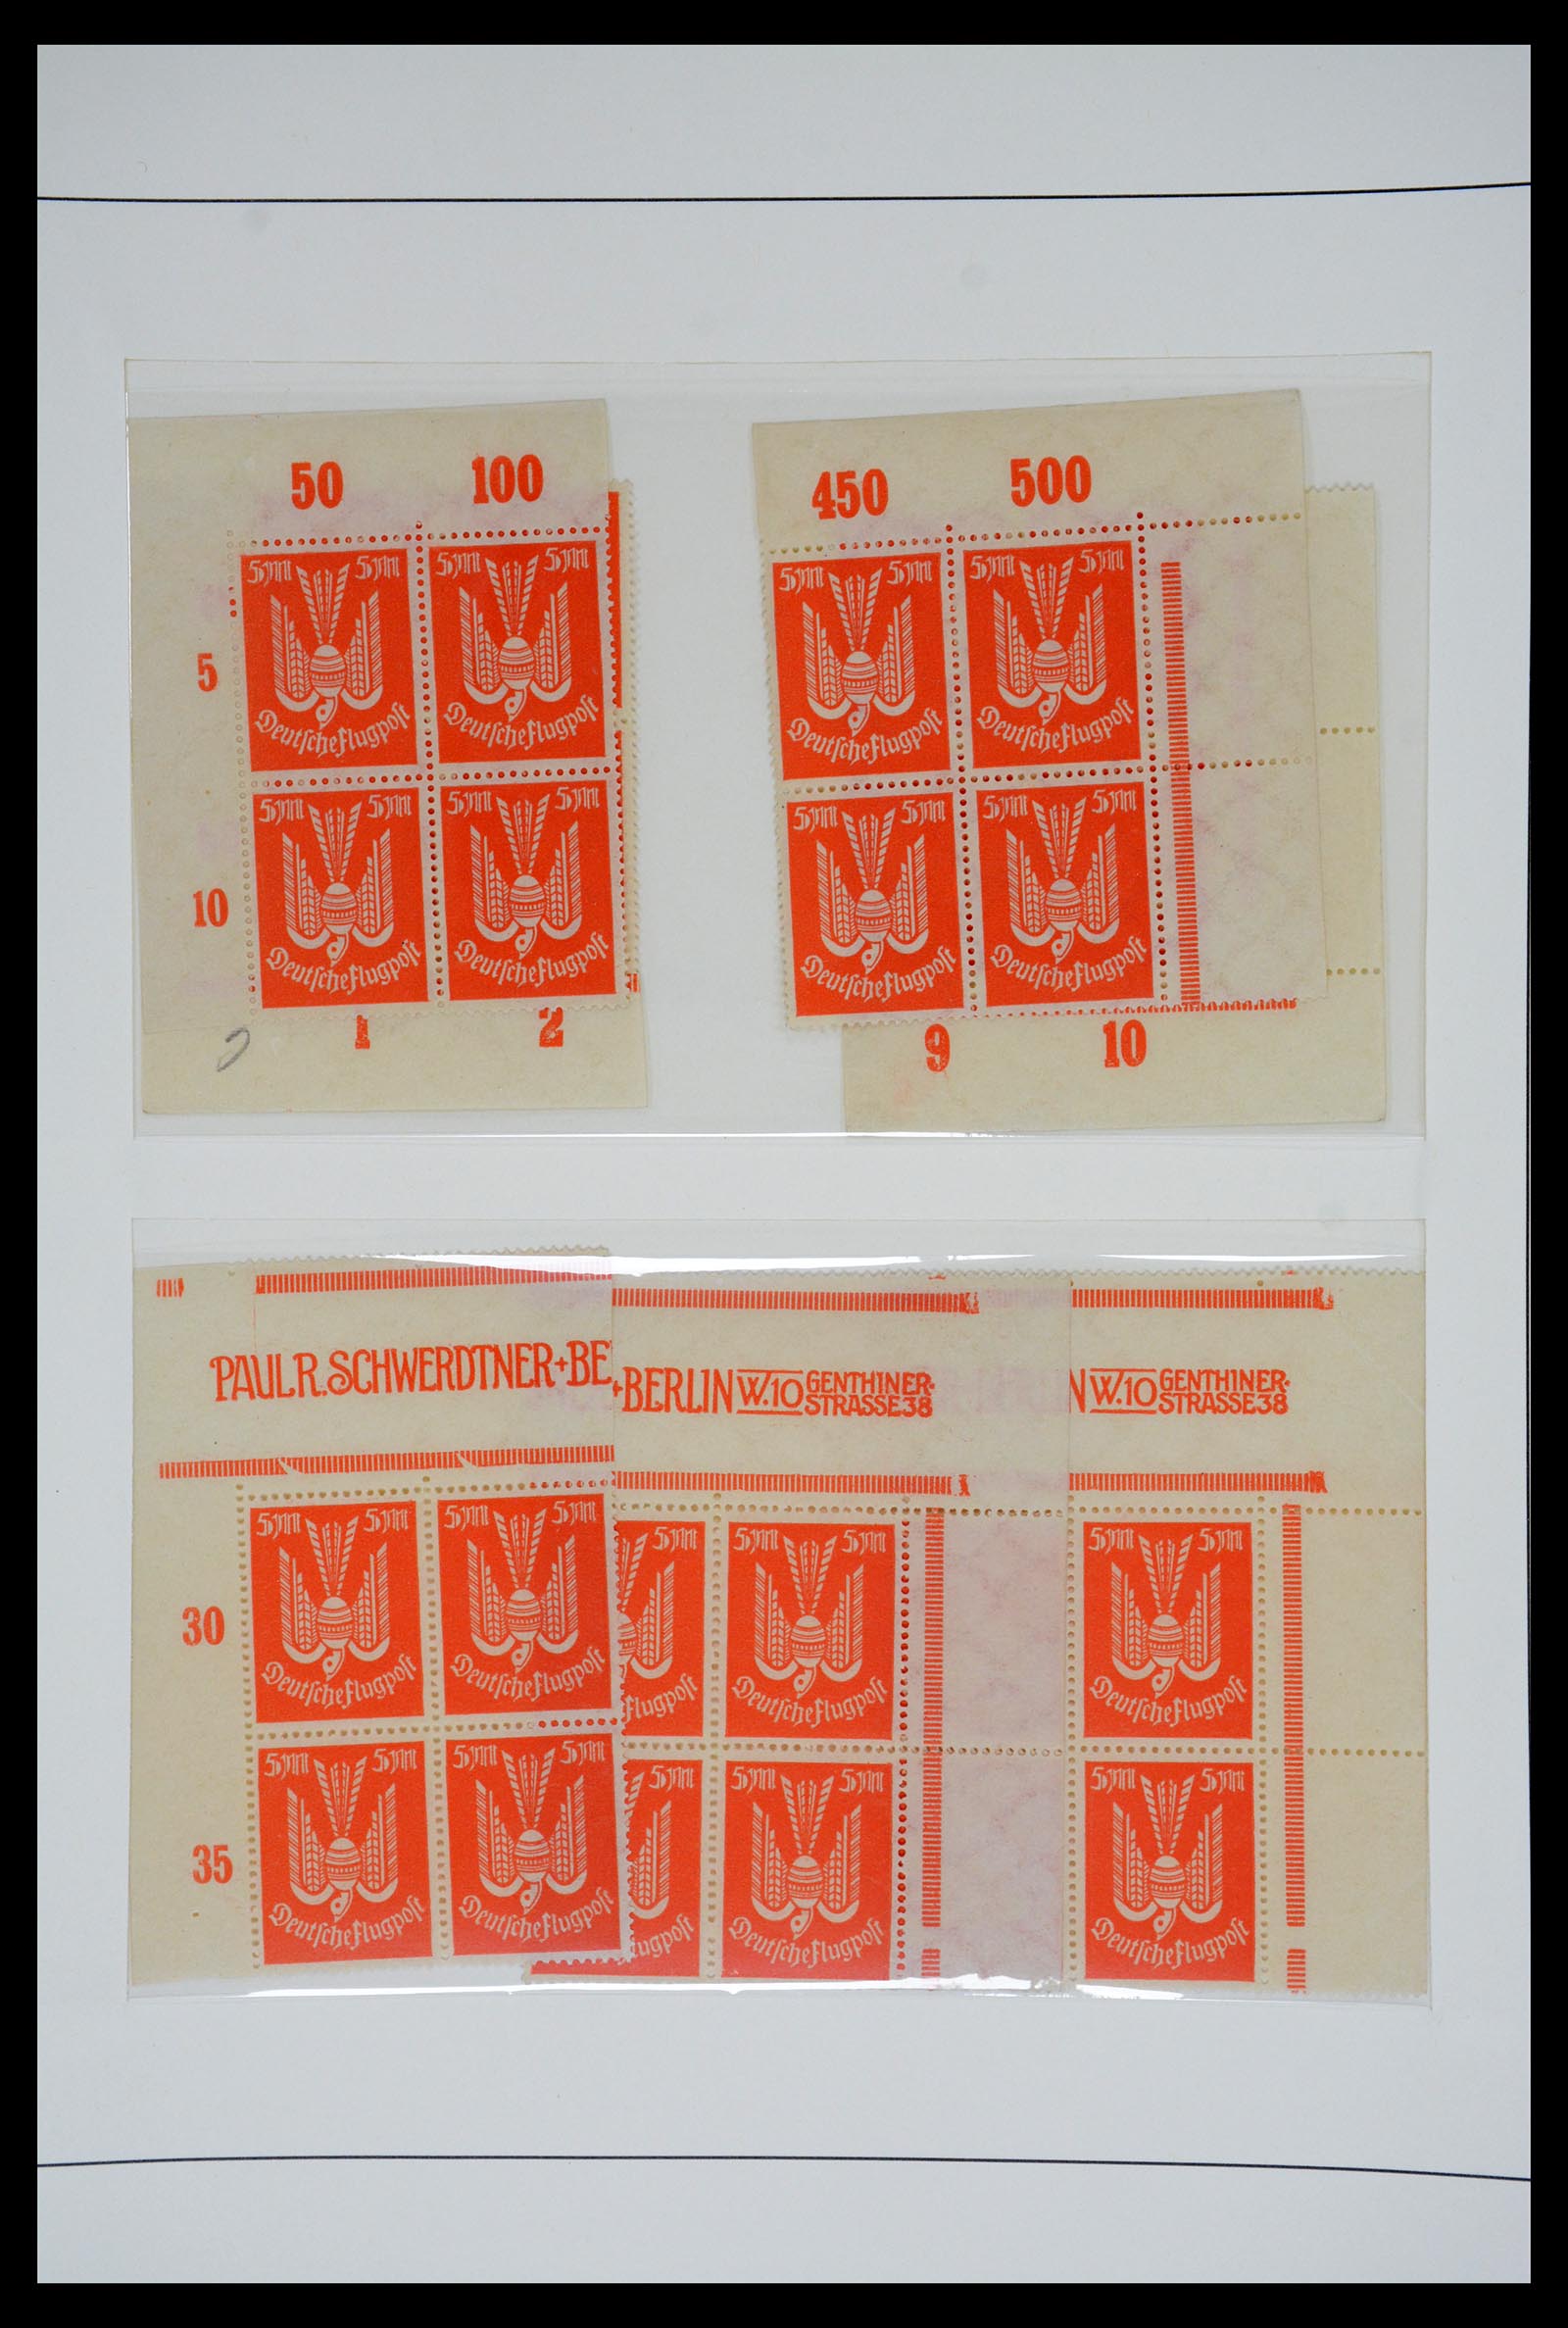 36009 062 - Postzegelverzameling 36009 Luchtpost zegels en brieven 1920-1940.